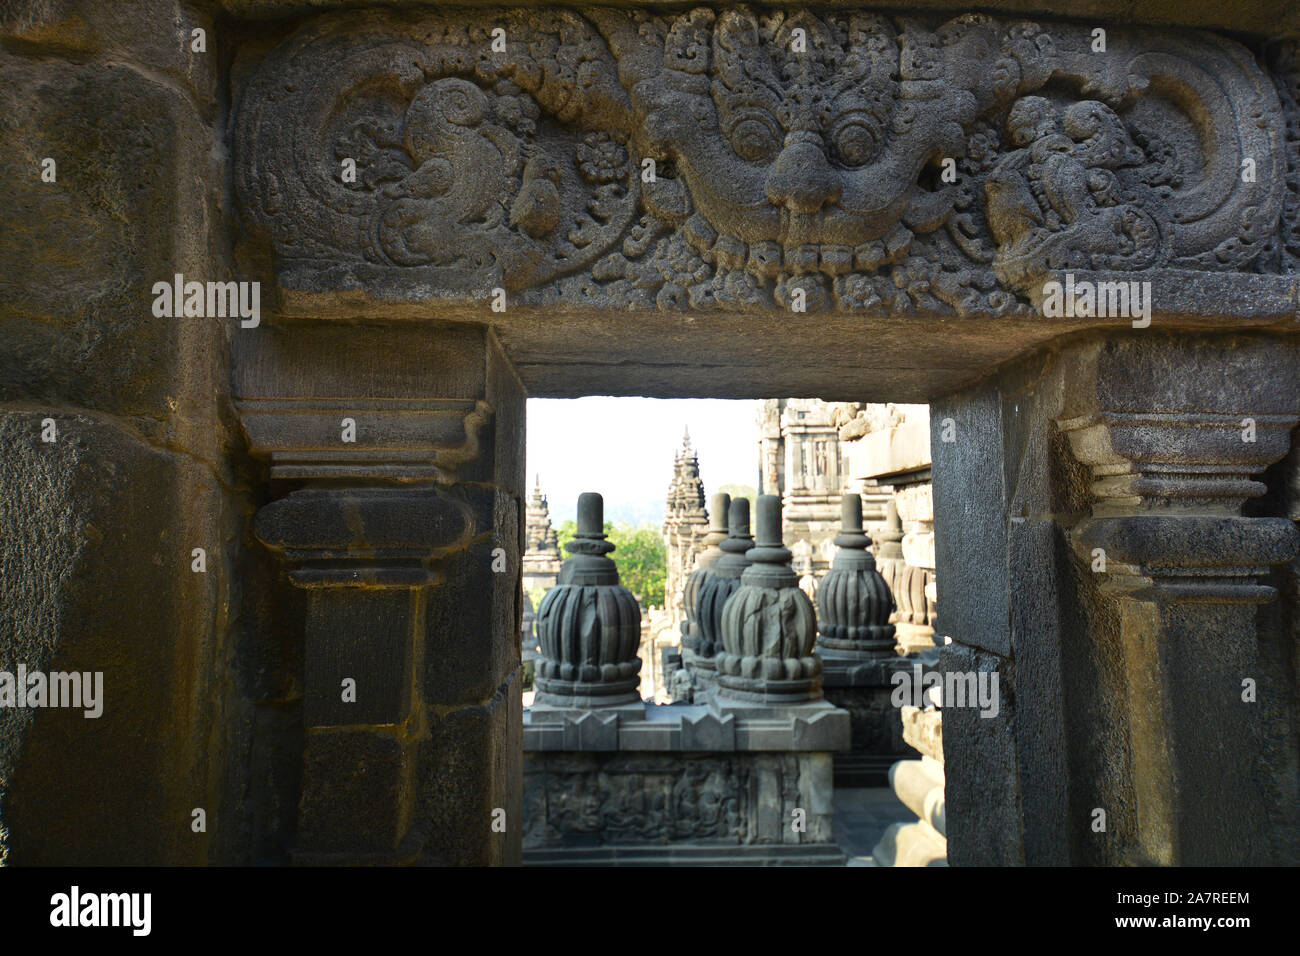 View through stone door at Borobudur Buddhist temple. Yogyakarta, Indonesia Stock Photo